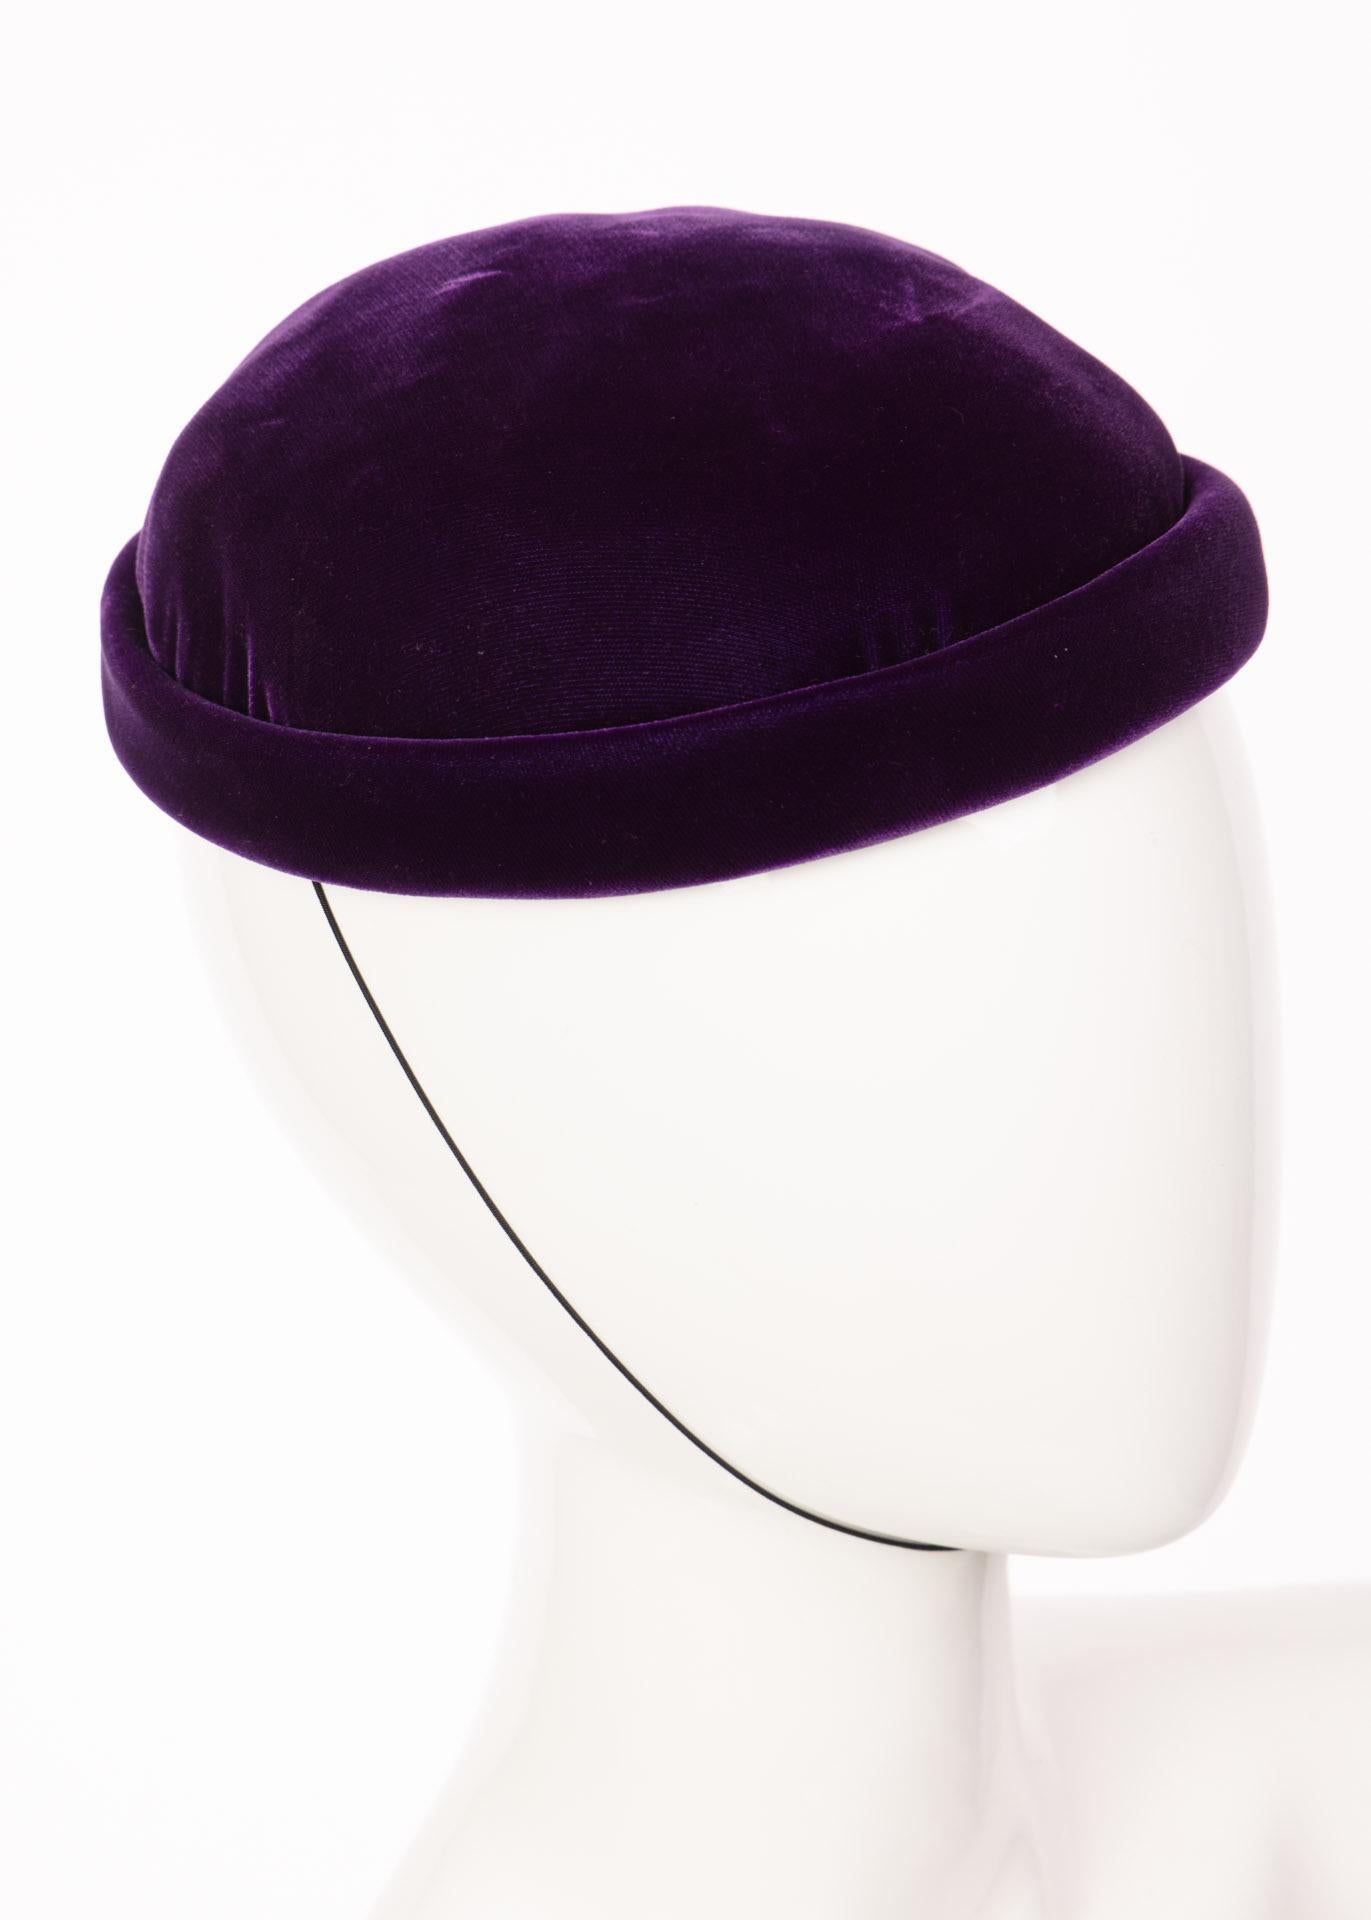 Chapeau en velours de soie violet Vintage Givenchy Boutique.
Le chapeau est structuré avec un bord roulé et une mentonnière élastique. 
Entièrement doublé, il est doté d'un bandeau en ruban gros grain.
Excellent état. 

Estimation de la taille :